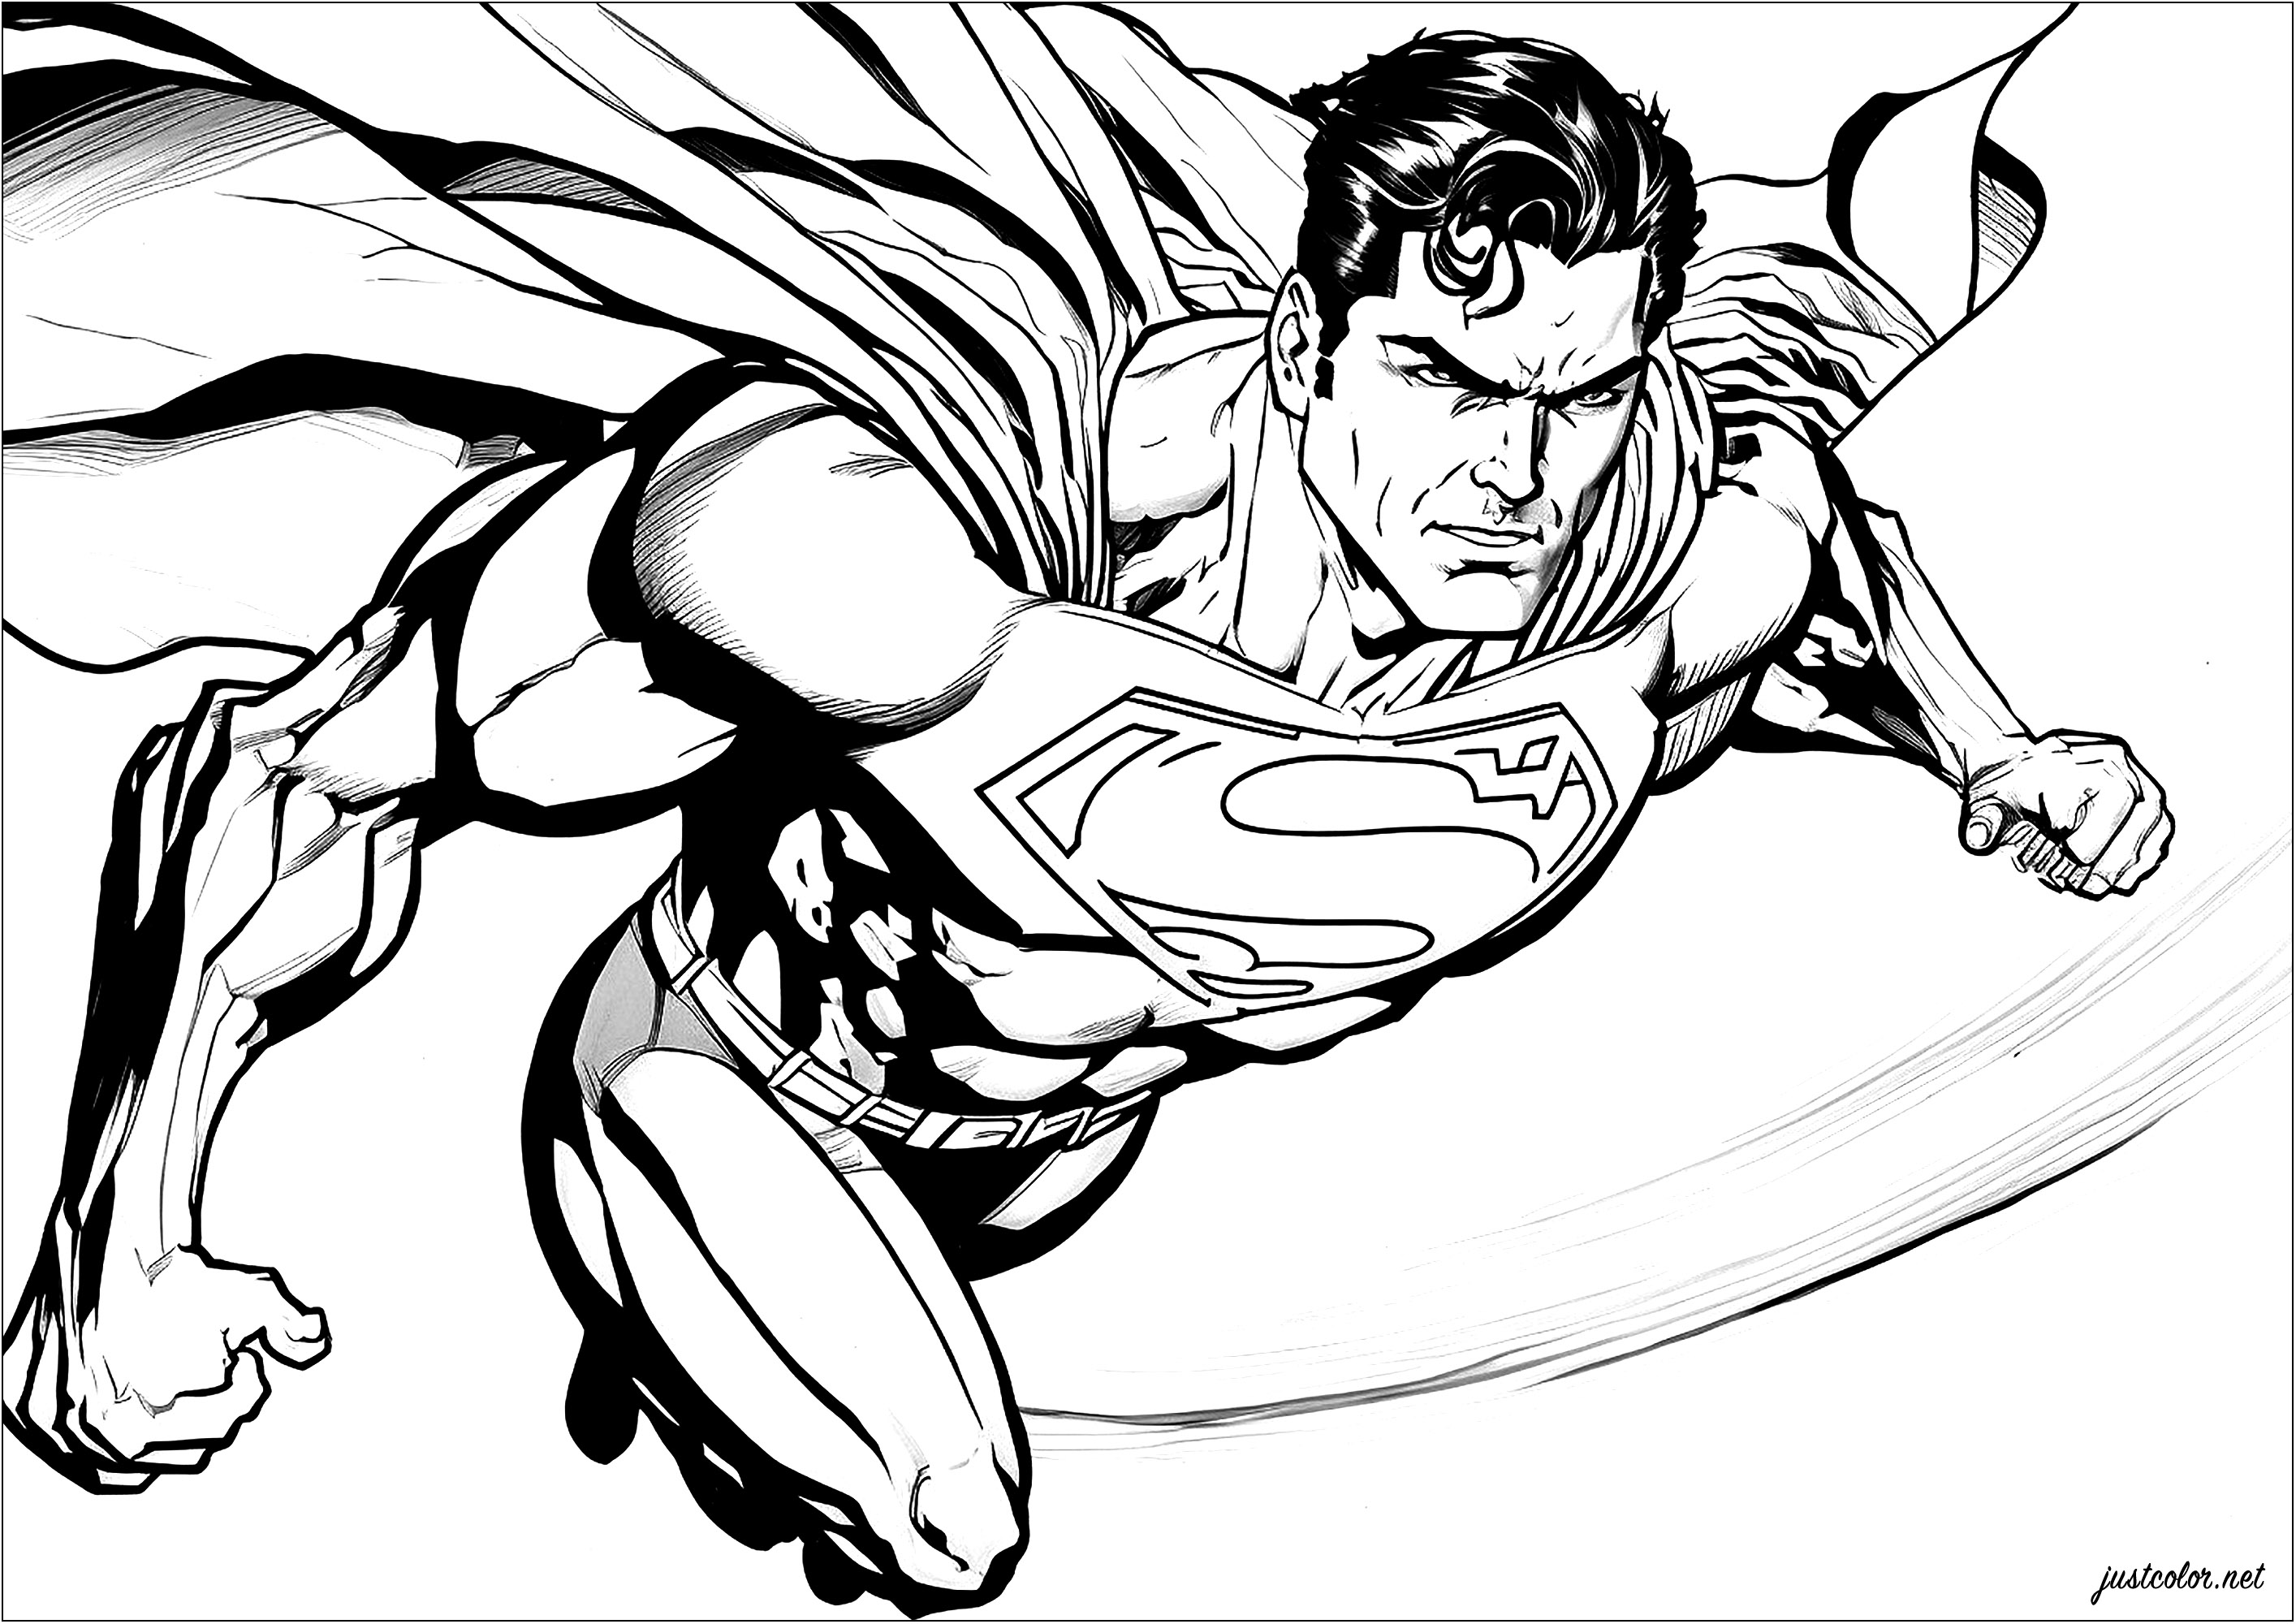 Superman in volo, mantello al ventoQuesta pagina da colorare rappresenta Superman in volo. Vediamo il supereroe, vestito con il suo costume (che presto sarà rosso e blu grazie a voi), volare nel cielo, con un'espressione di determinazione sul volto.